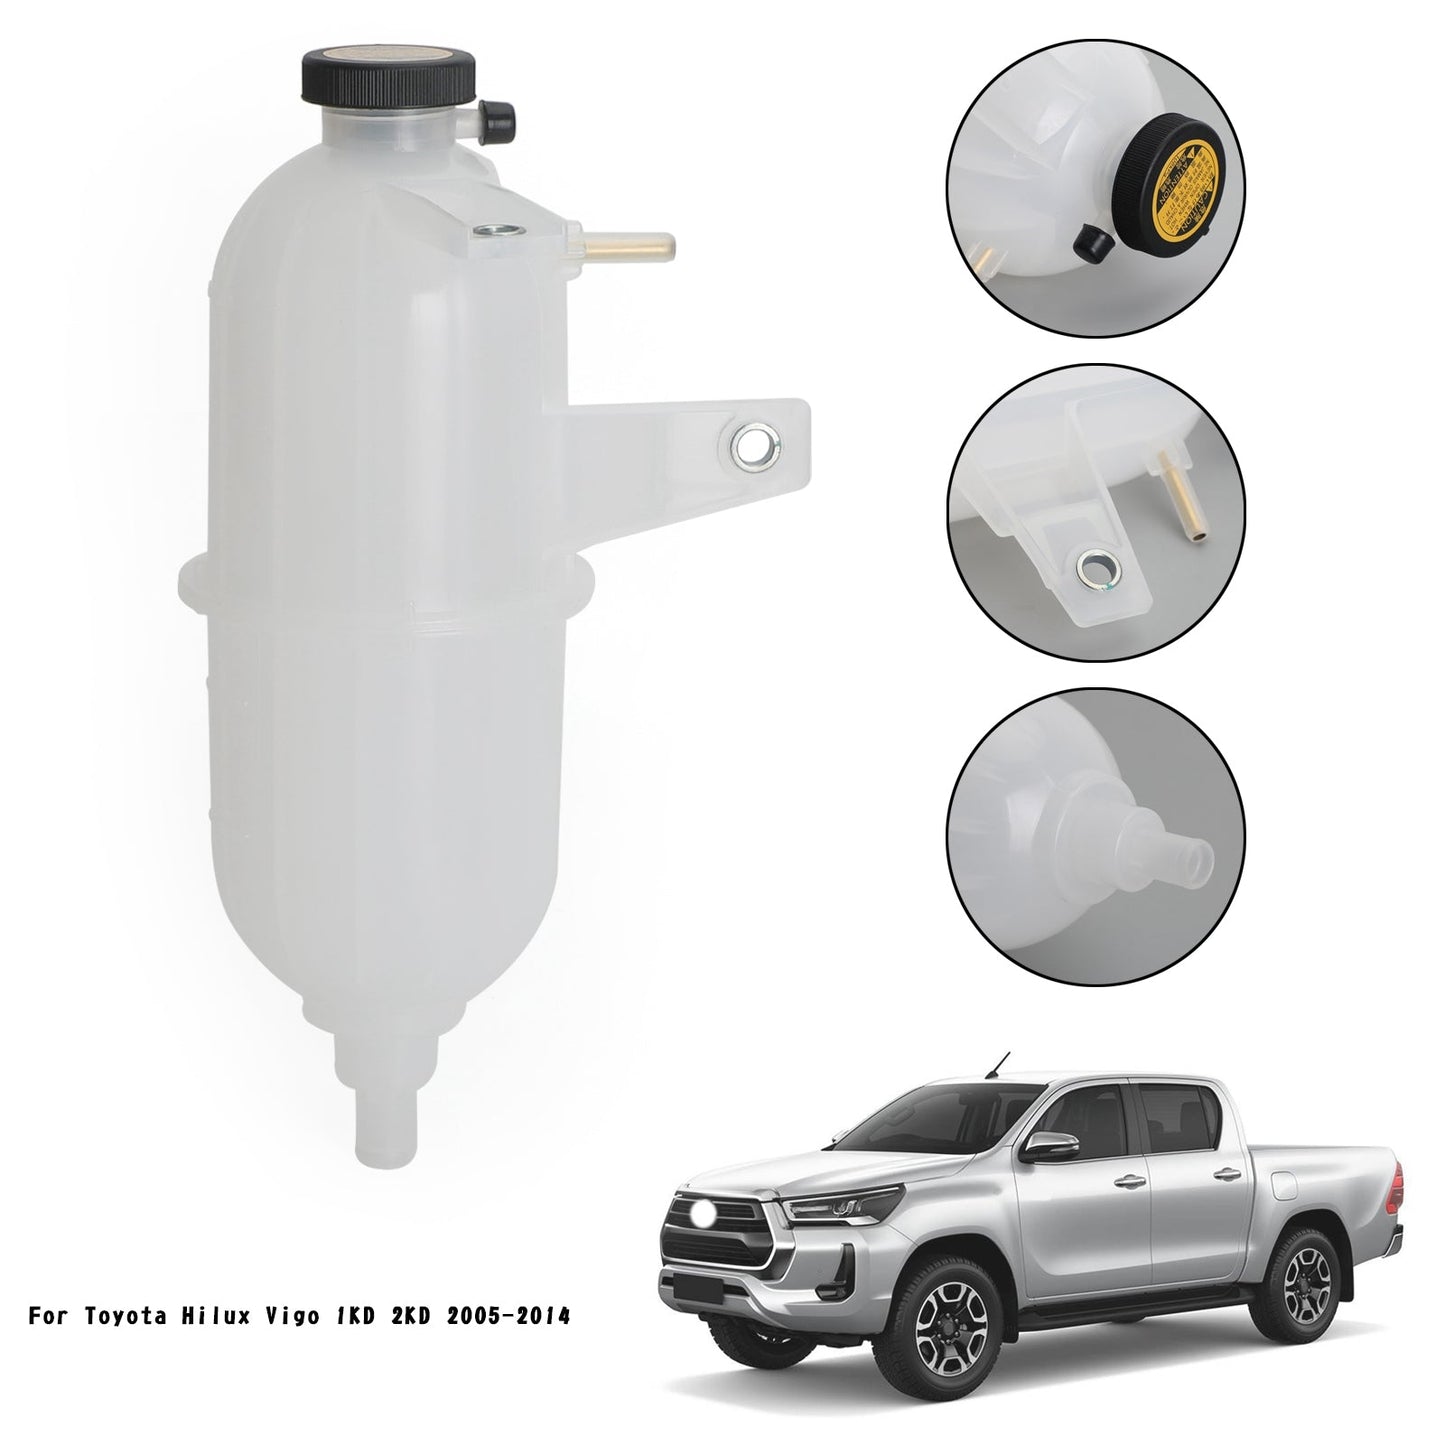 Serbatoio del refrigerante della bottiglia di troppopieno del radiatore adatto Toyota Hilux Vigo 2KD 2005-14 Pick-up generico